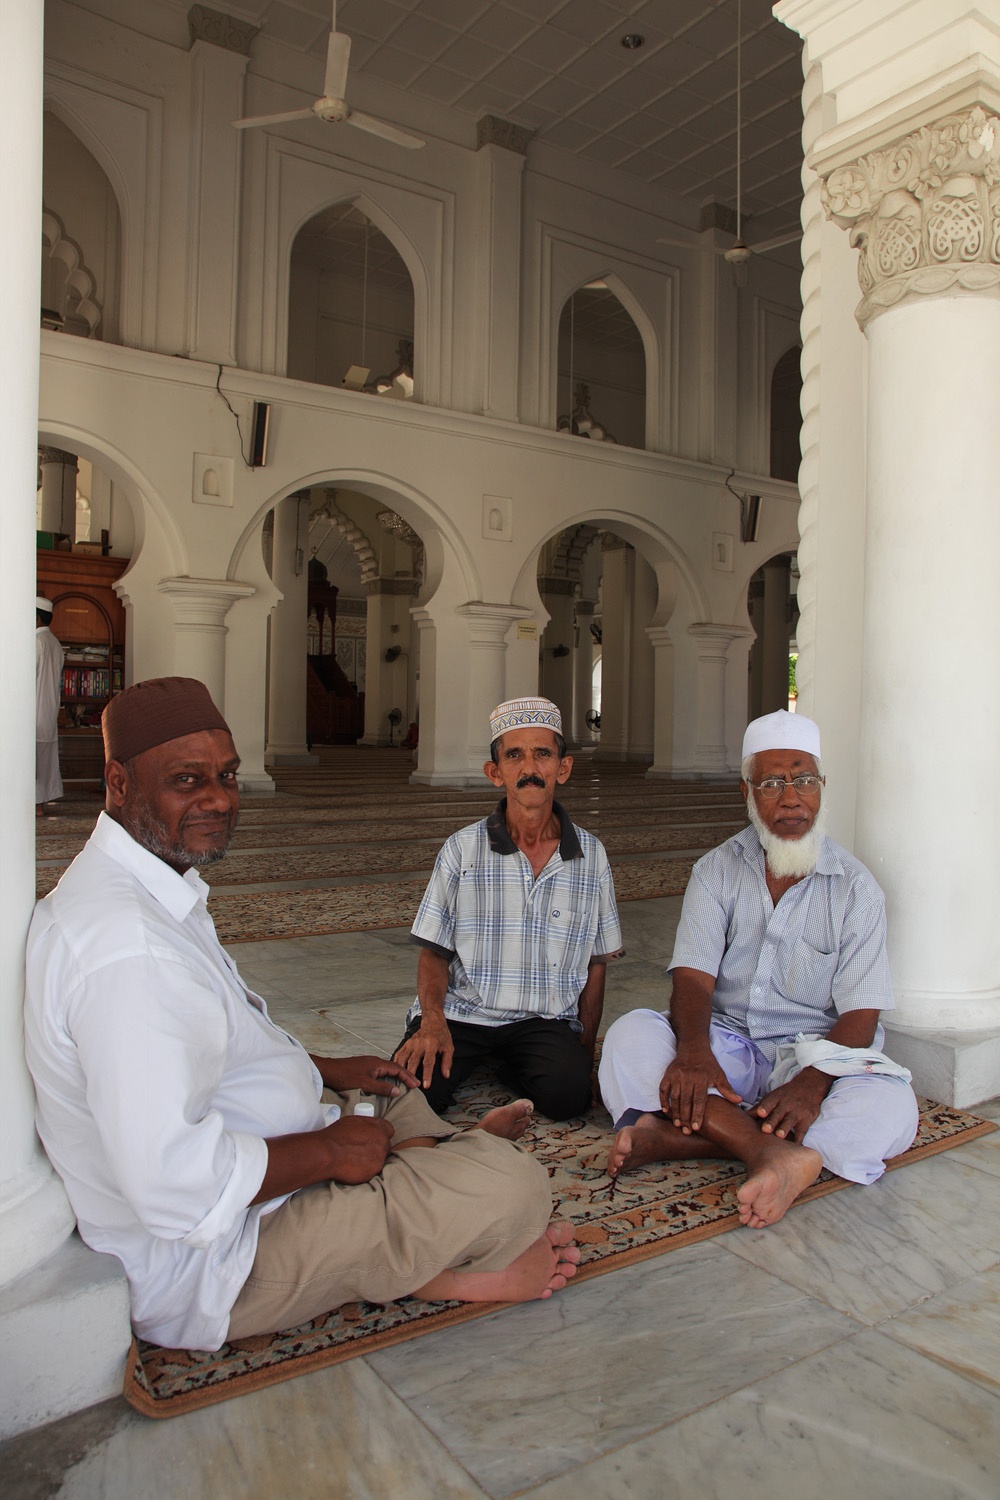 bill-hocker-three-friends-capitan-keling-mosque--penang-malaysia-2014